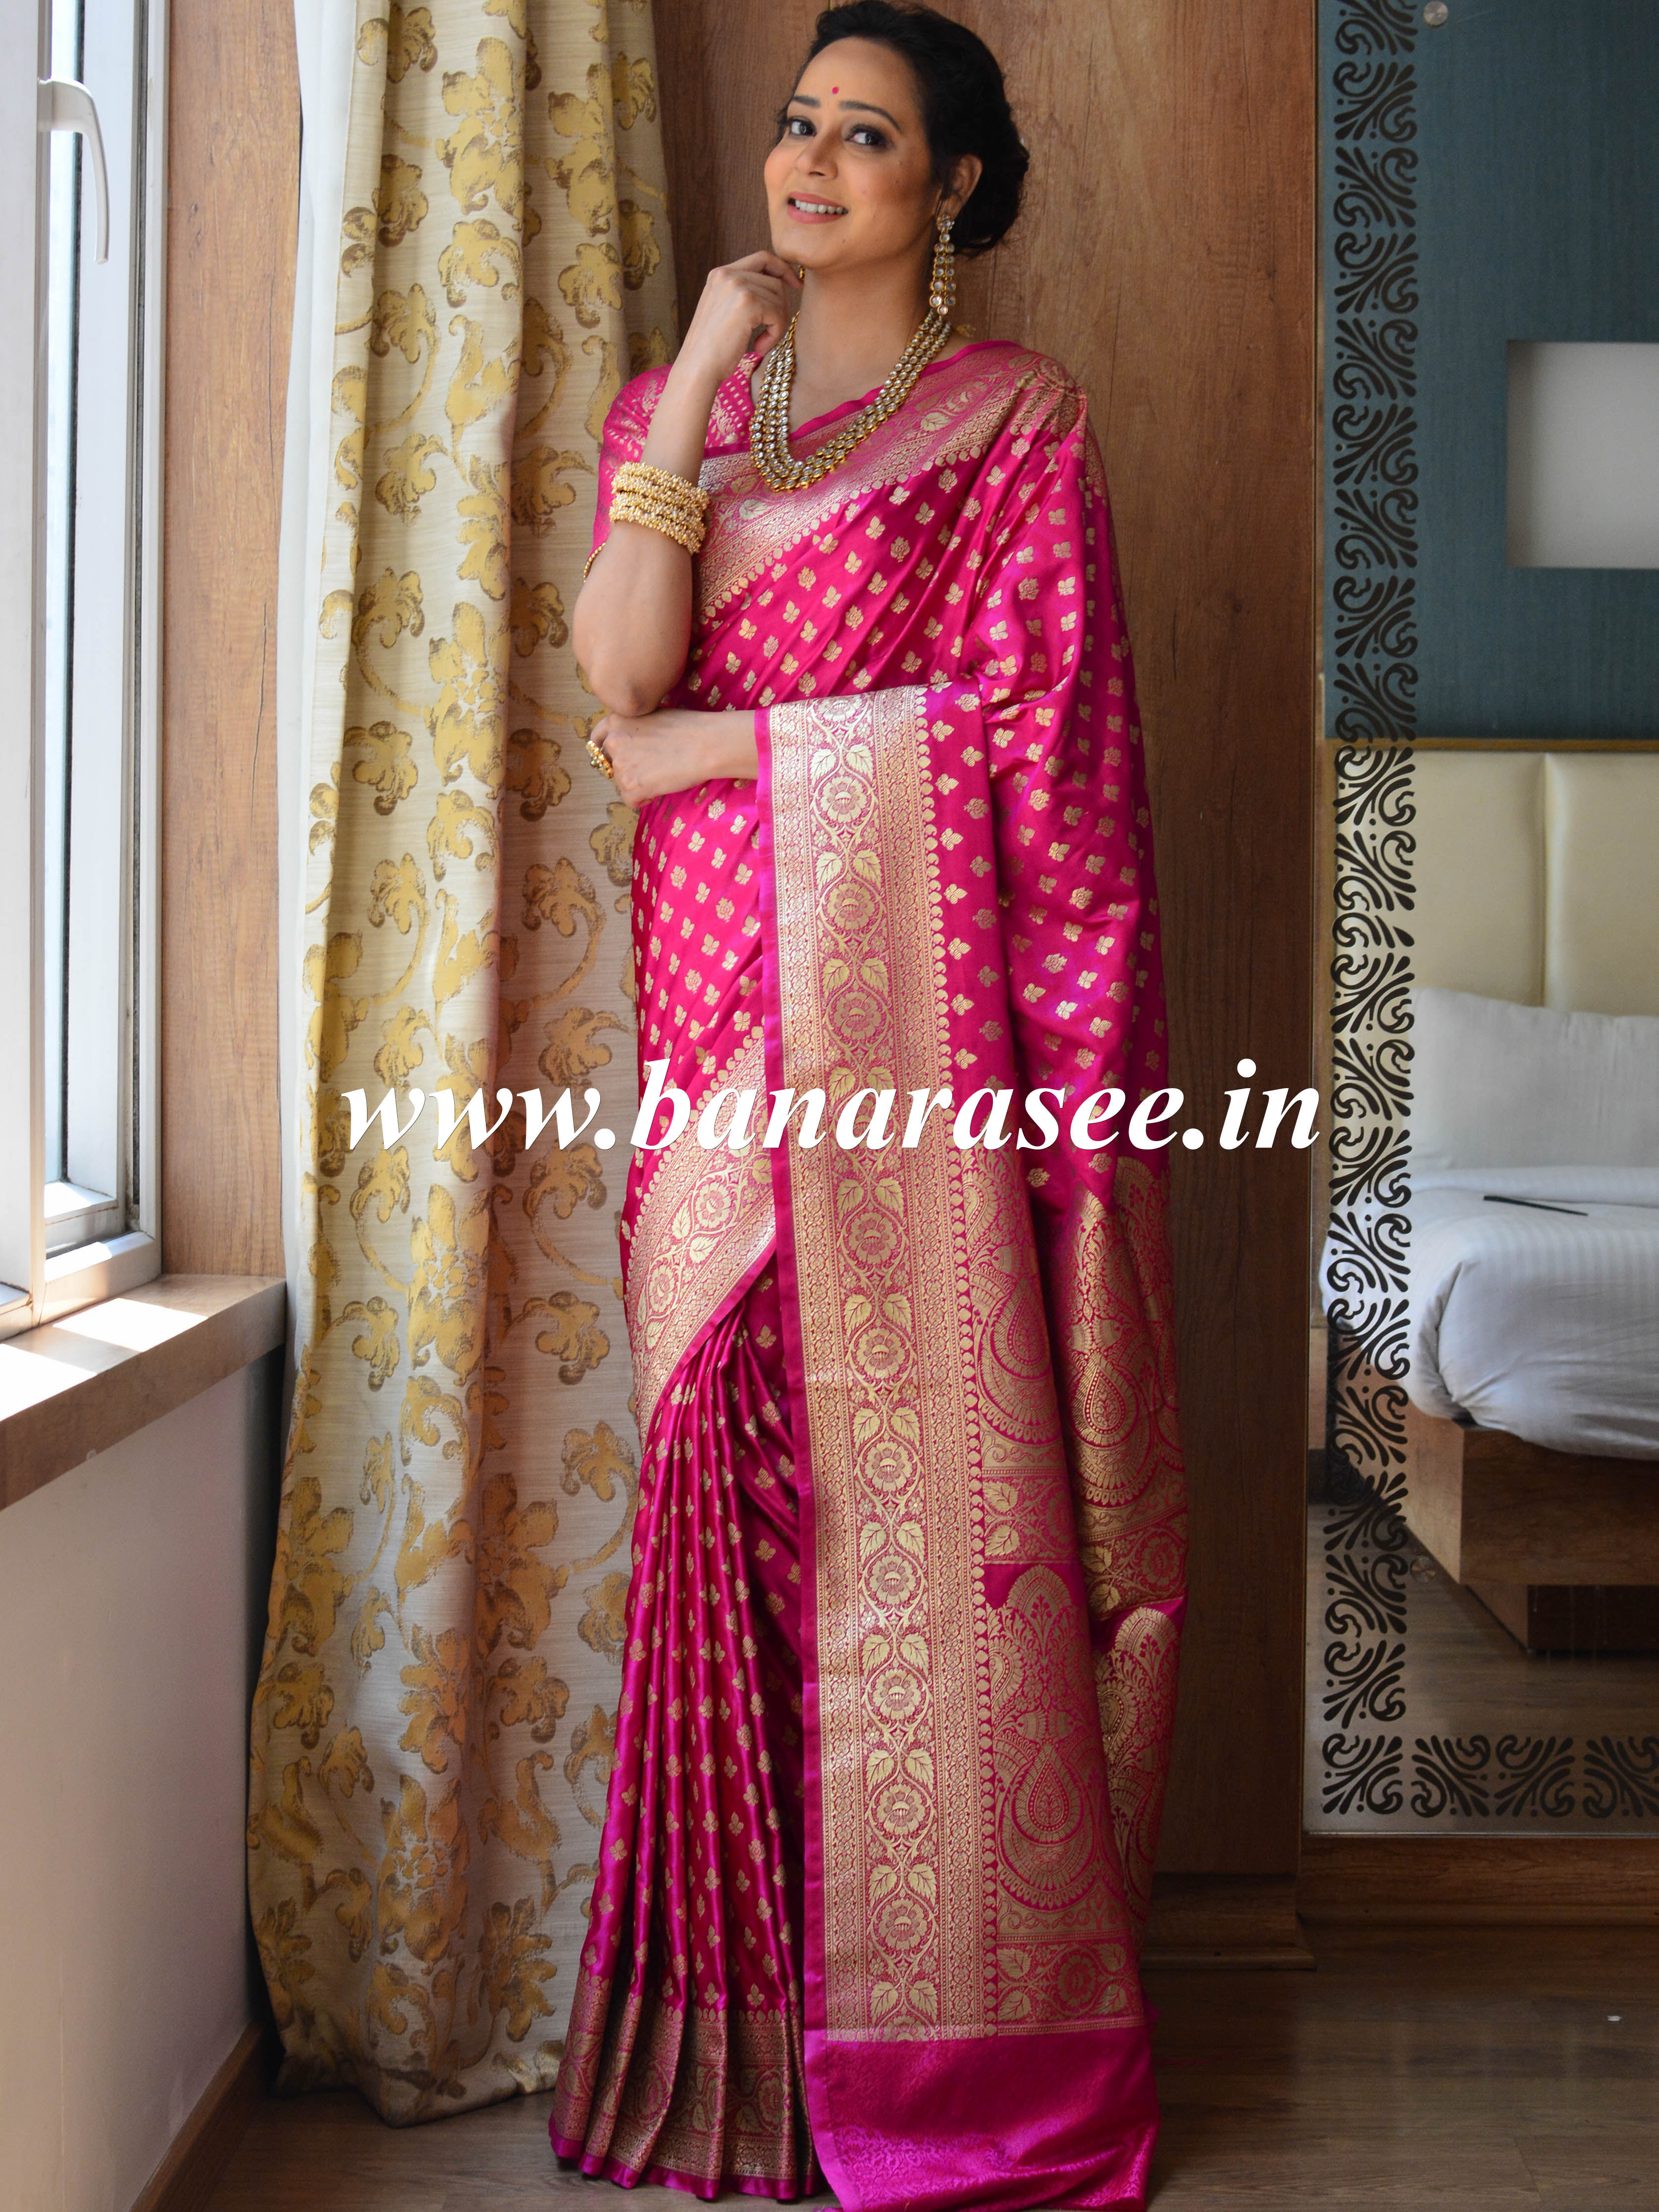 Banarasee Handwoven Satin Silk Gold Zari Buti Weaving Saree-Pink